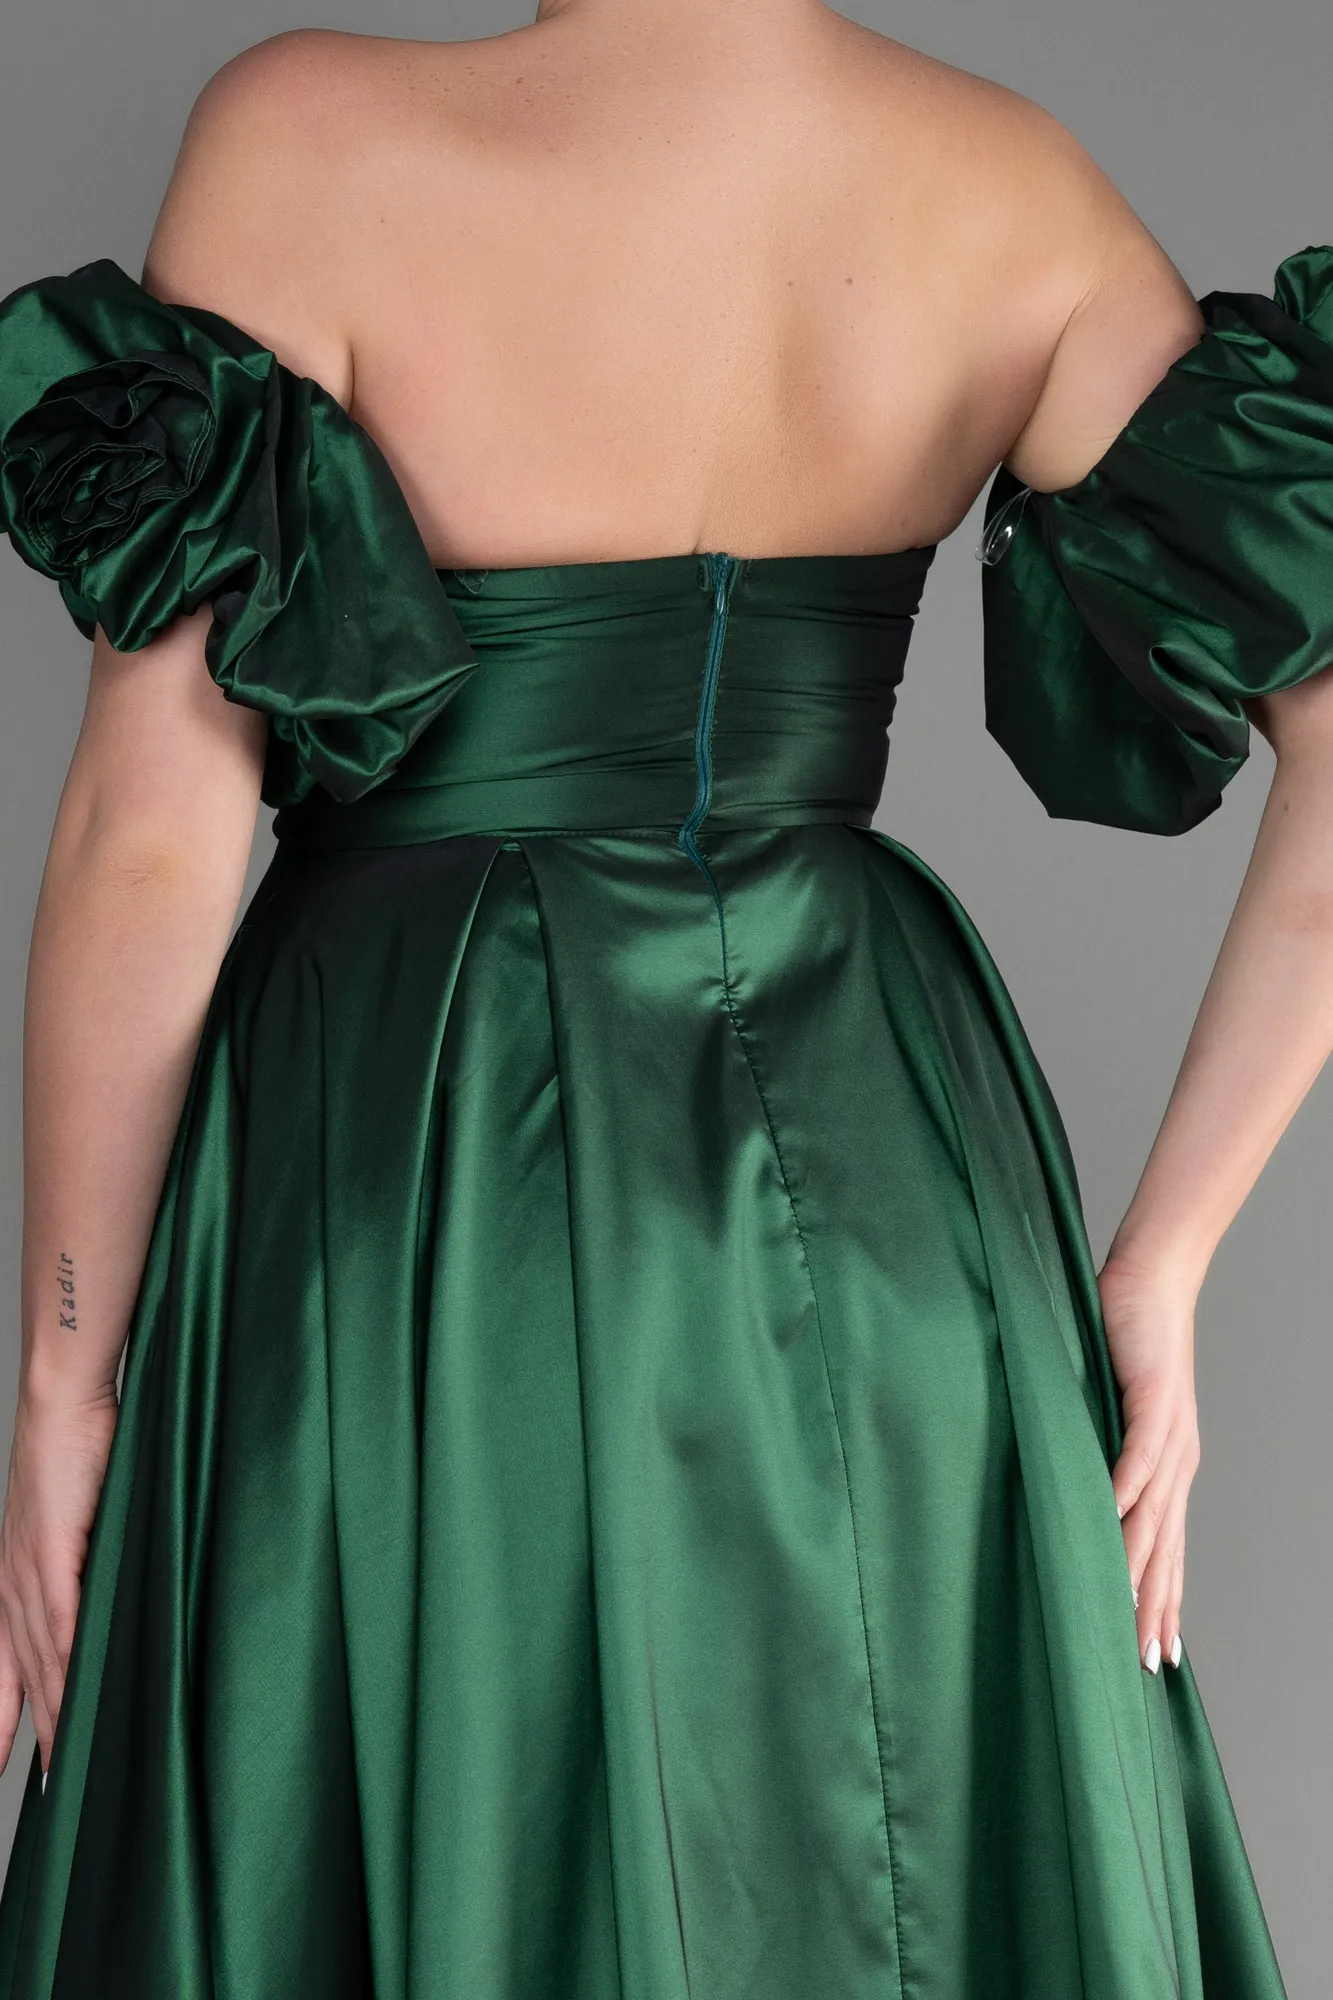 Emerald Green-Long Evening Dress ABU3547